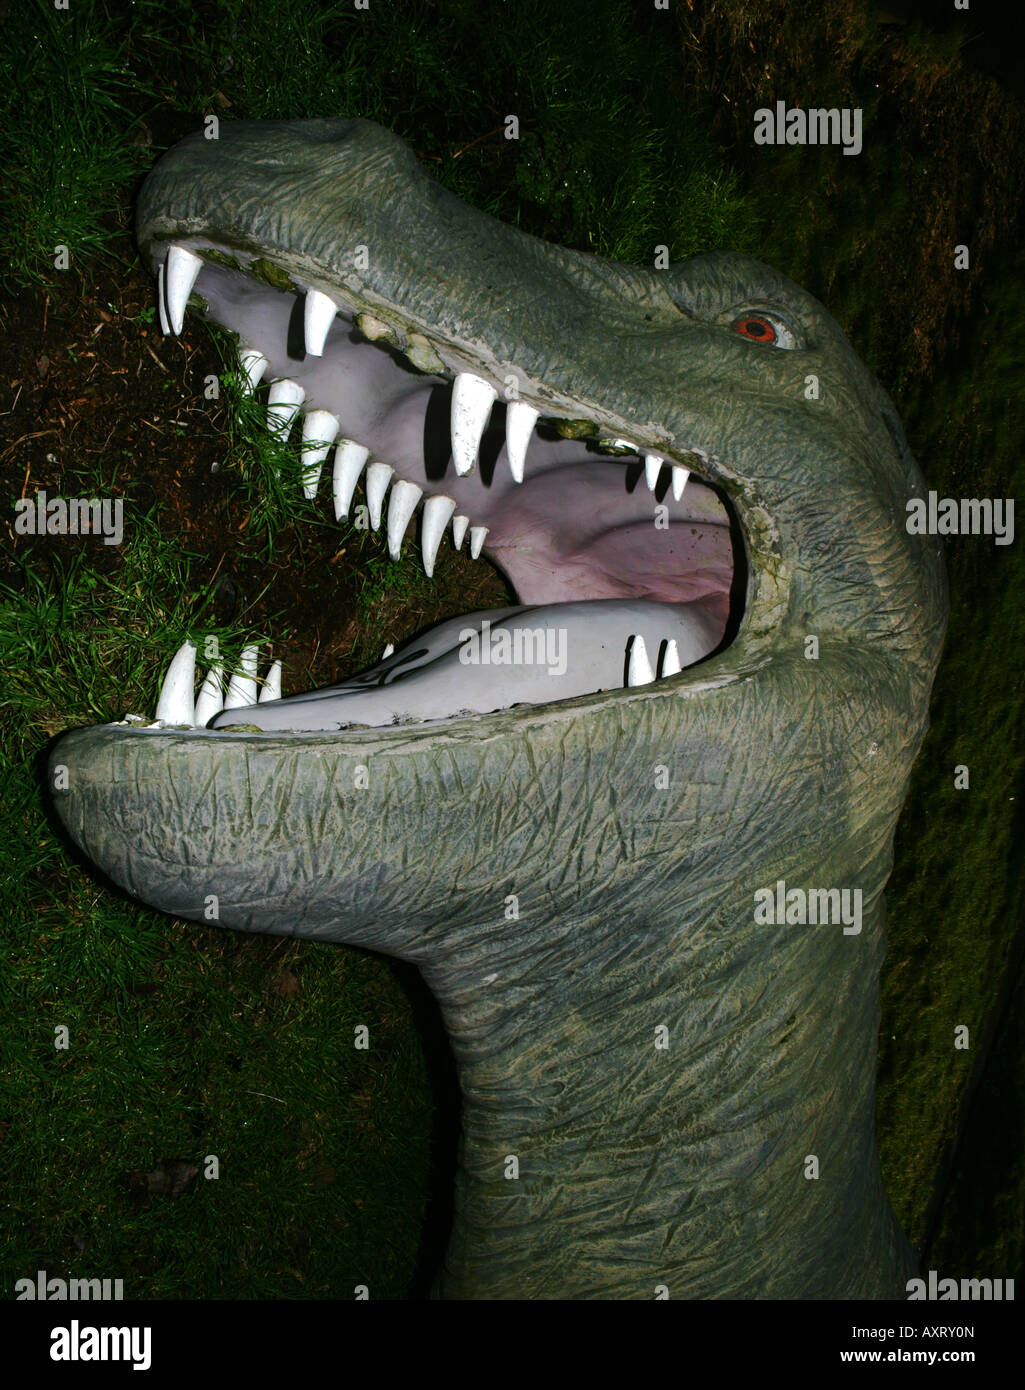 Un dinosaure en plastique au sol Banque D'Images